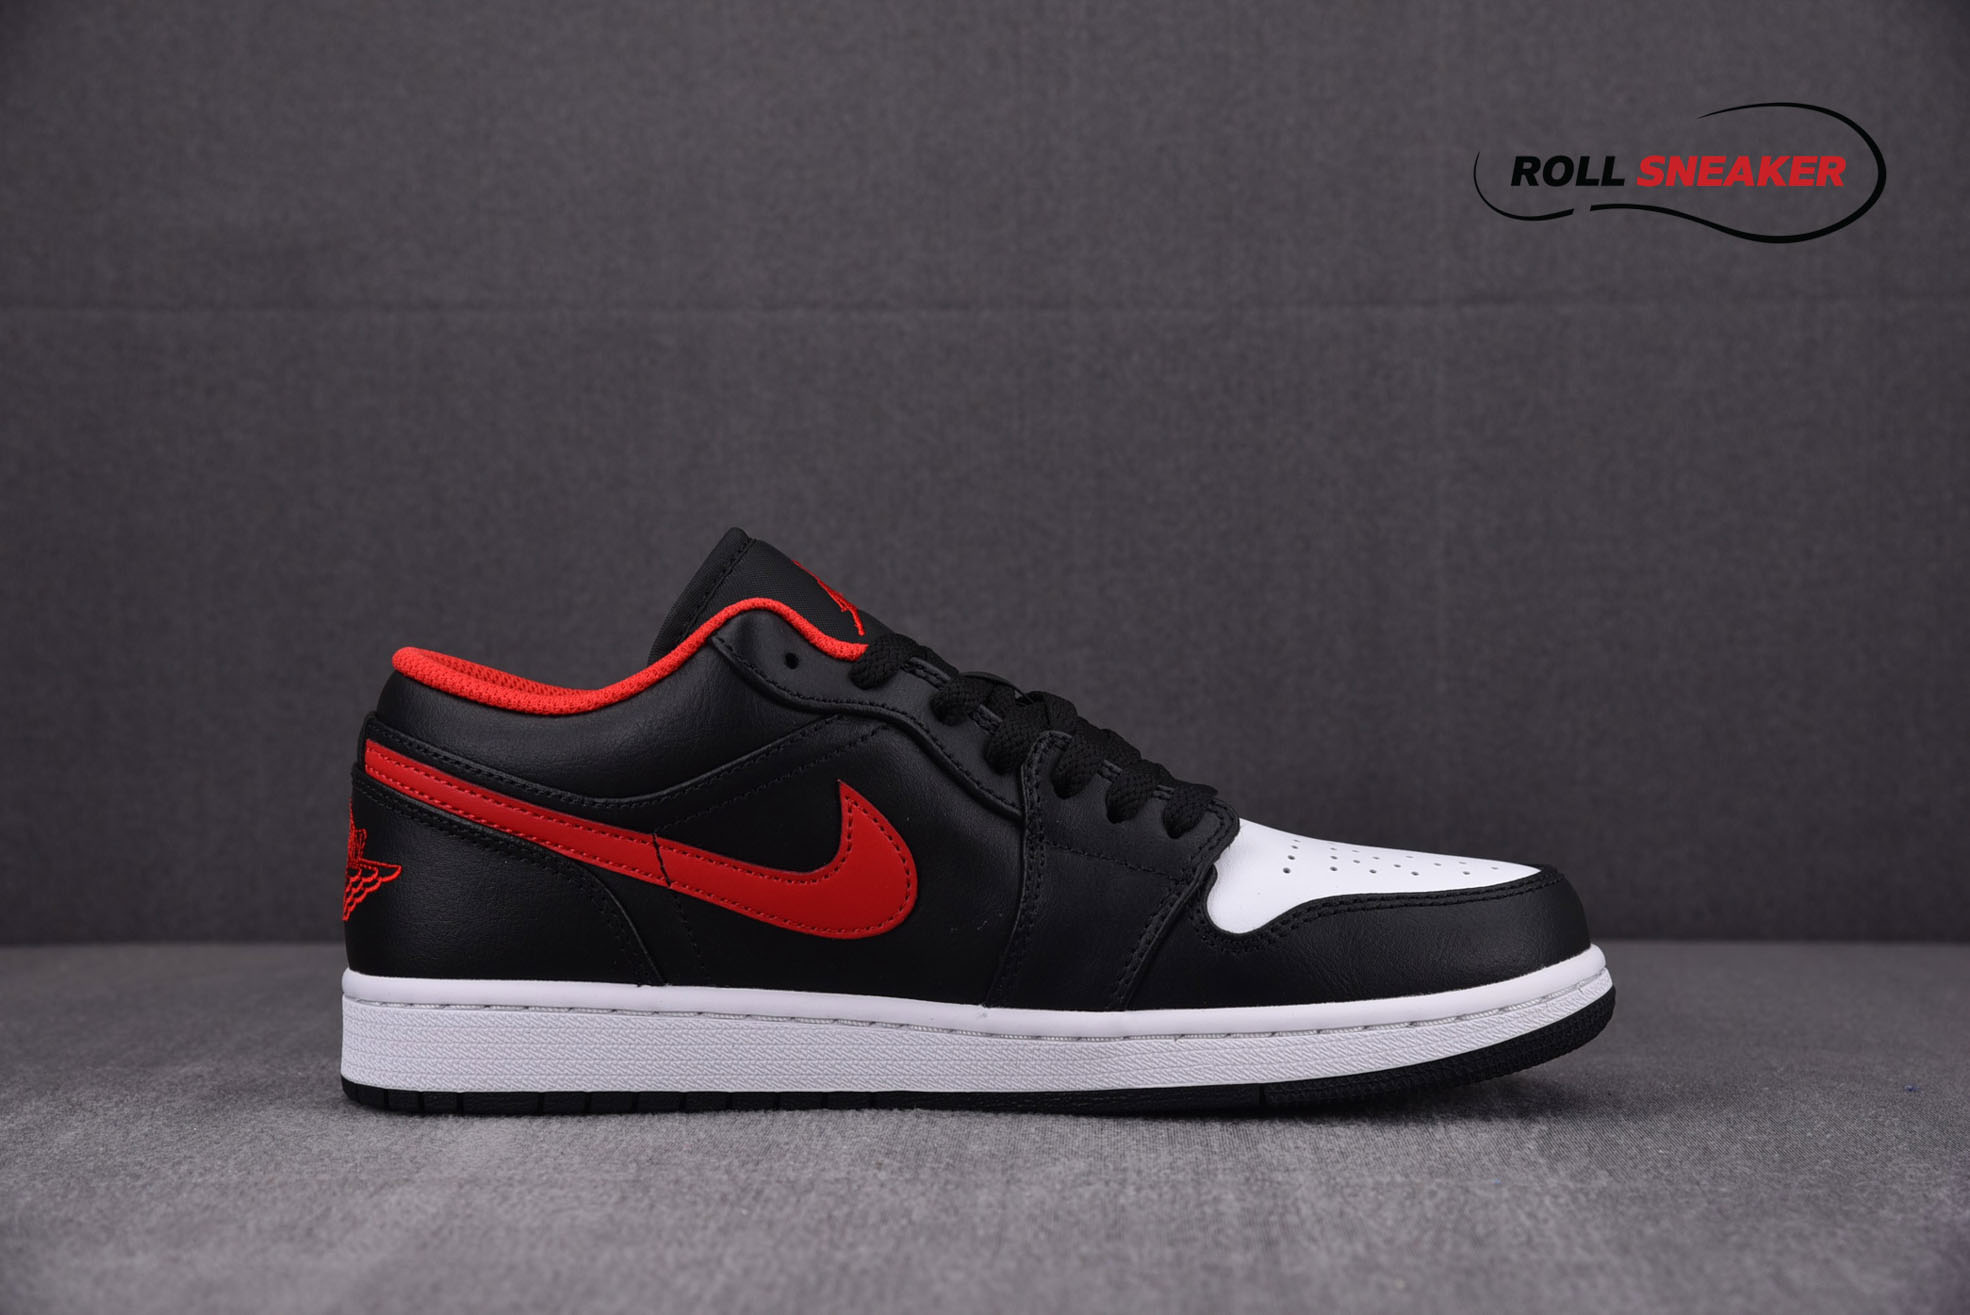 Nike Air Jordan 1 Low White Toe